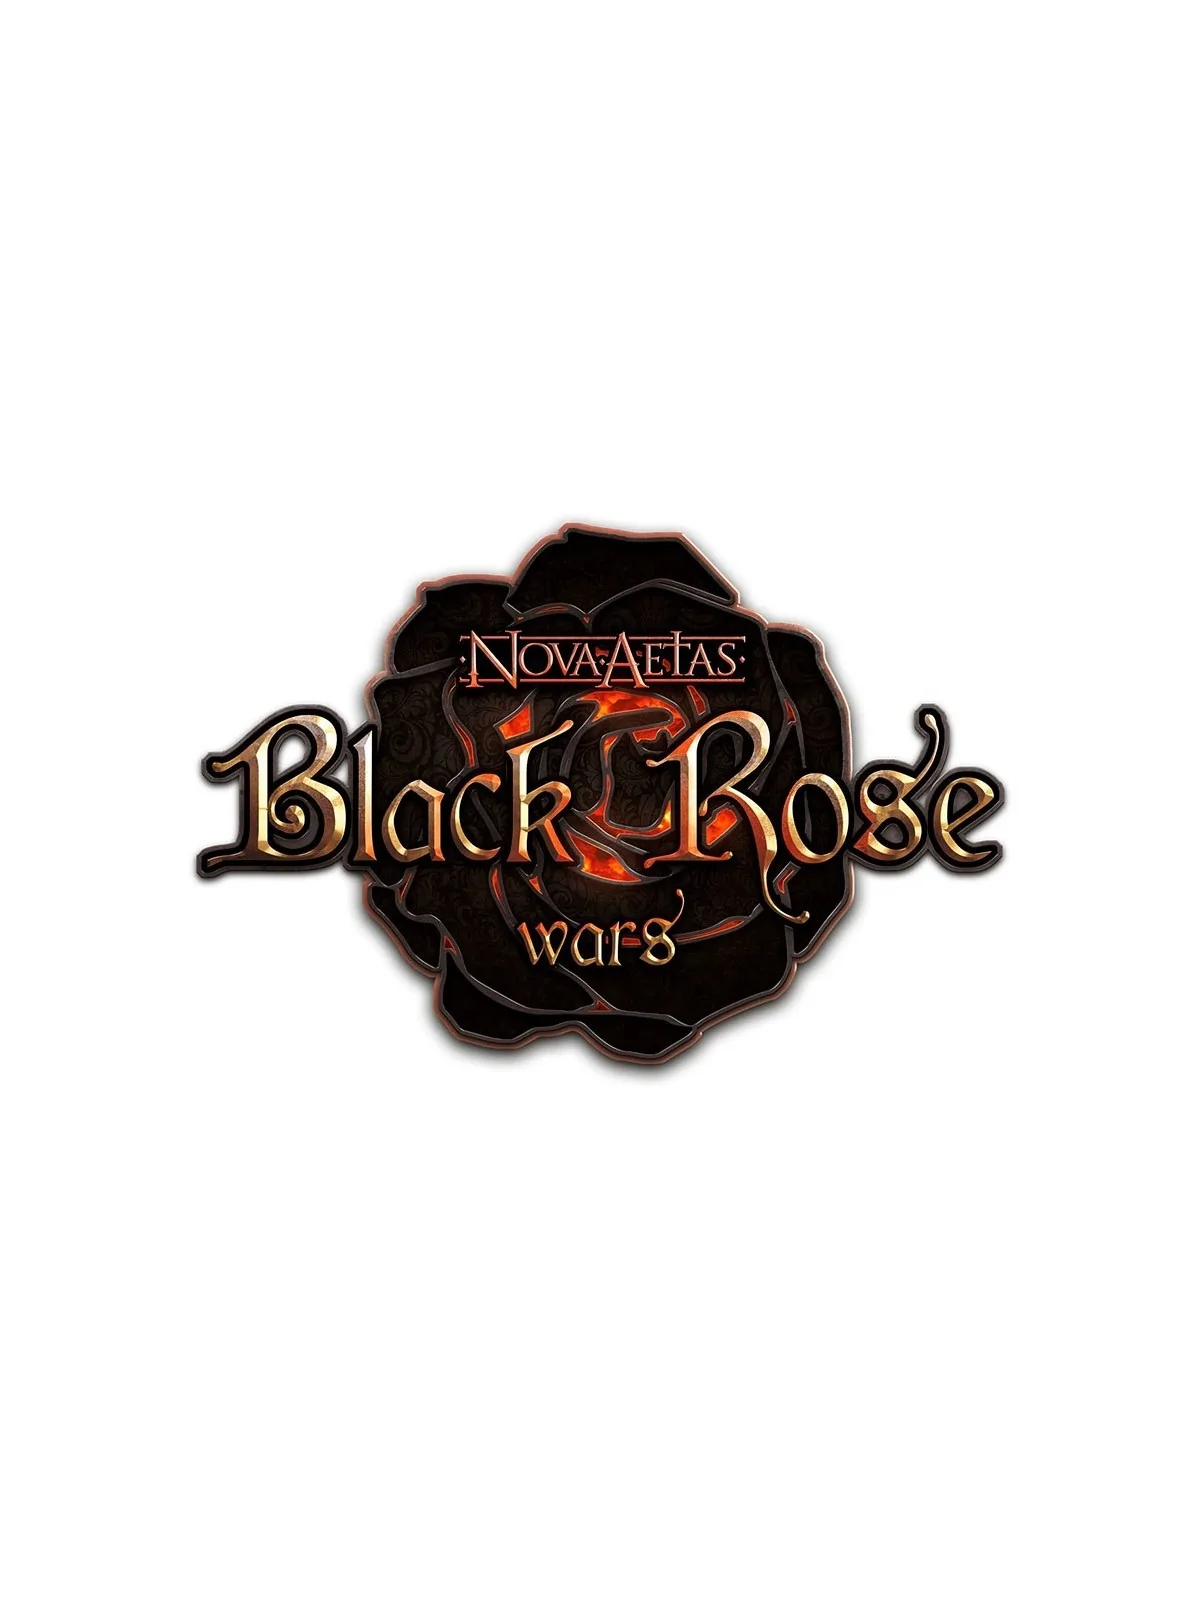 Comprar Black Rose Wars Cerberus Pet barato al mejor precio 13,46 € de